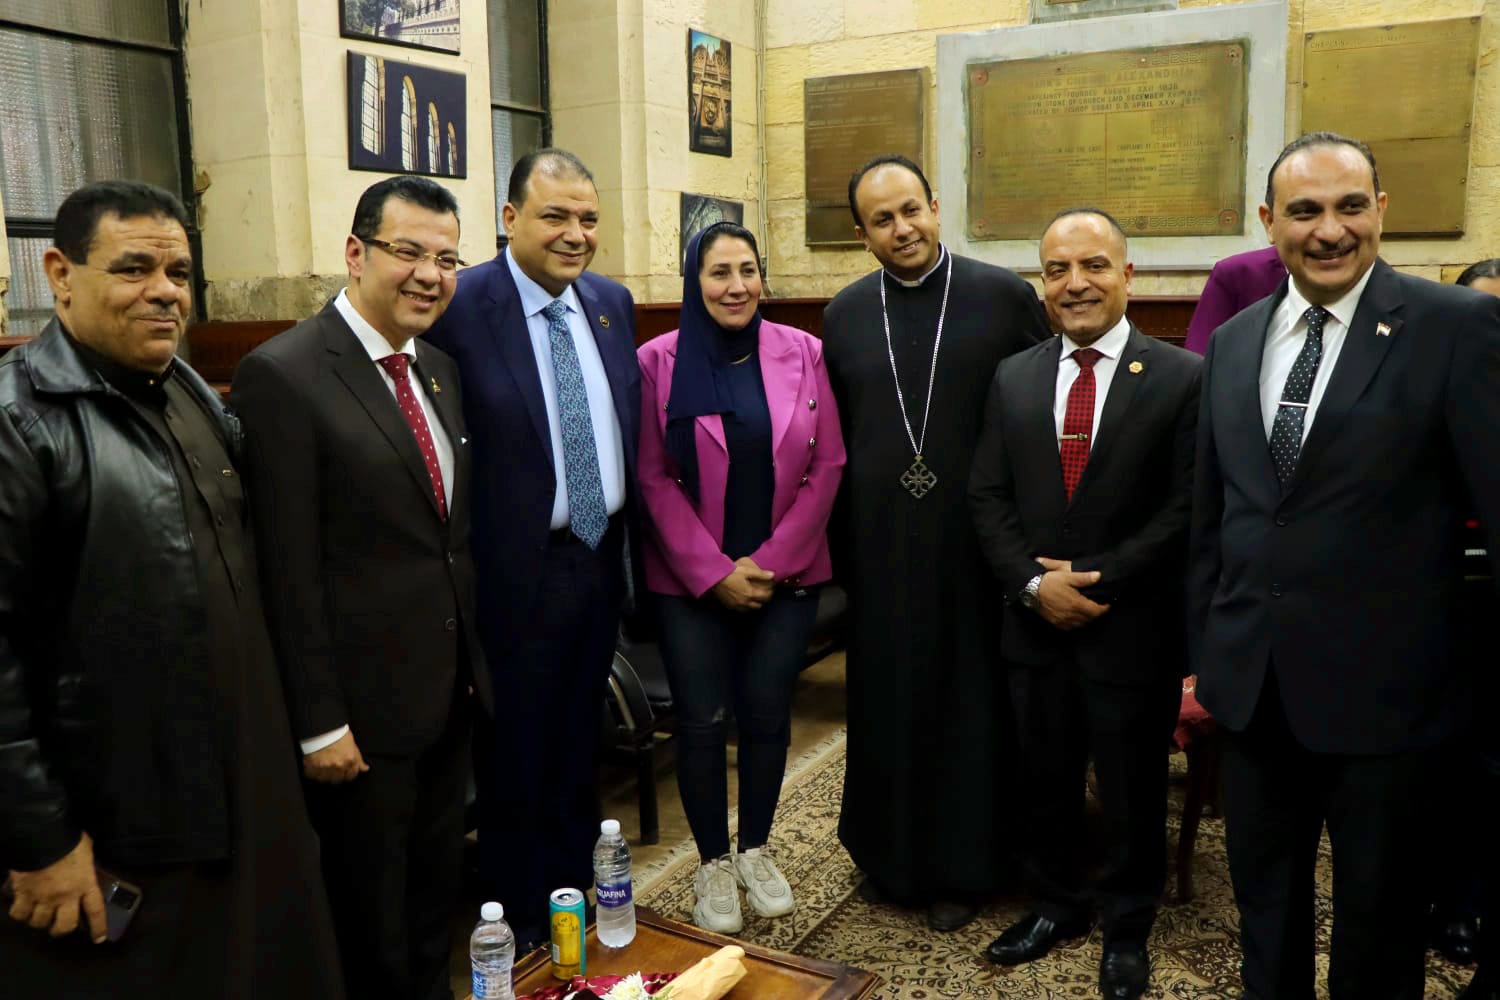 جريدة الرأي العام المصري تهنيء الإخوة الأقباط  بعيد الميلاد المجيد 1